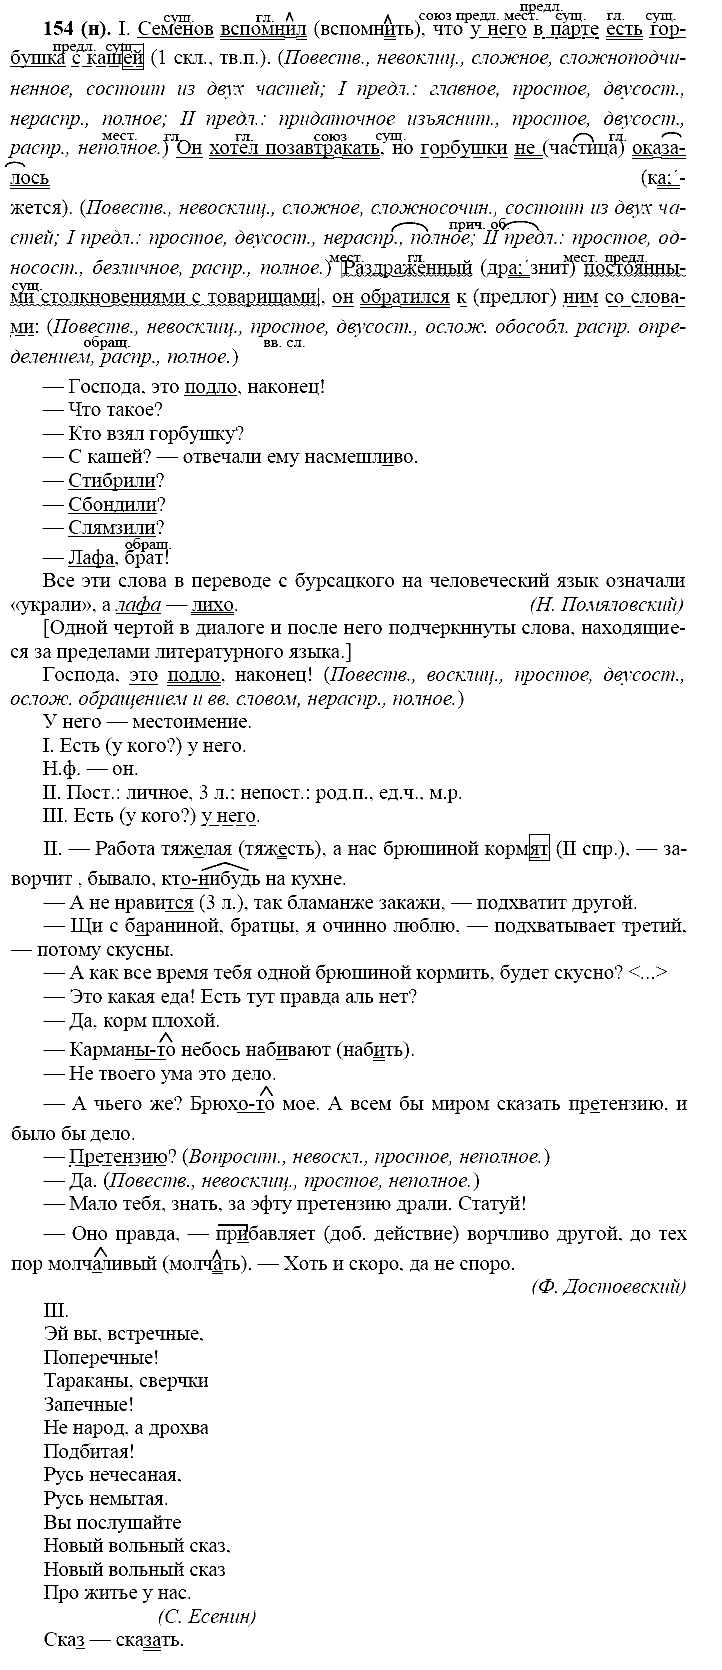 Русский язык, 11 класс, Власенков, Рыбченков, 2009-2014, задание: 154 (н)